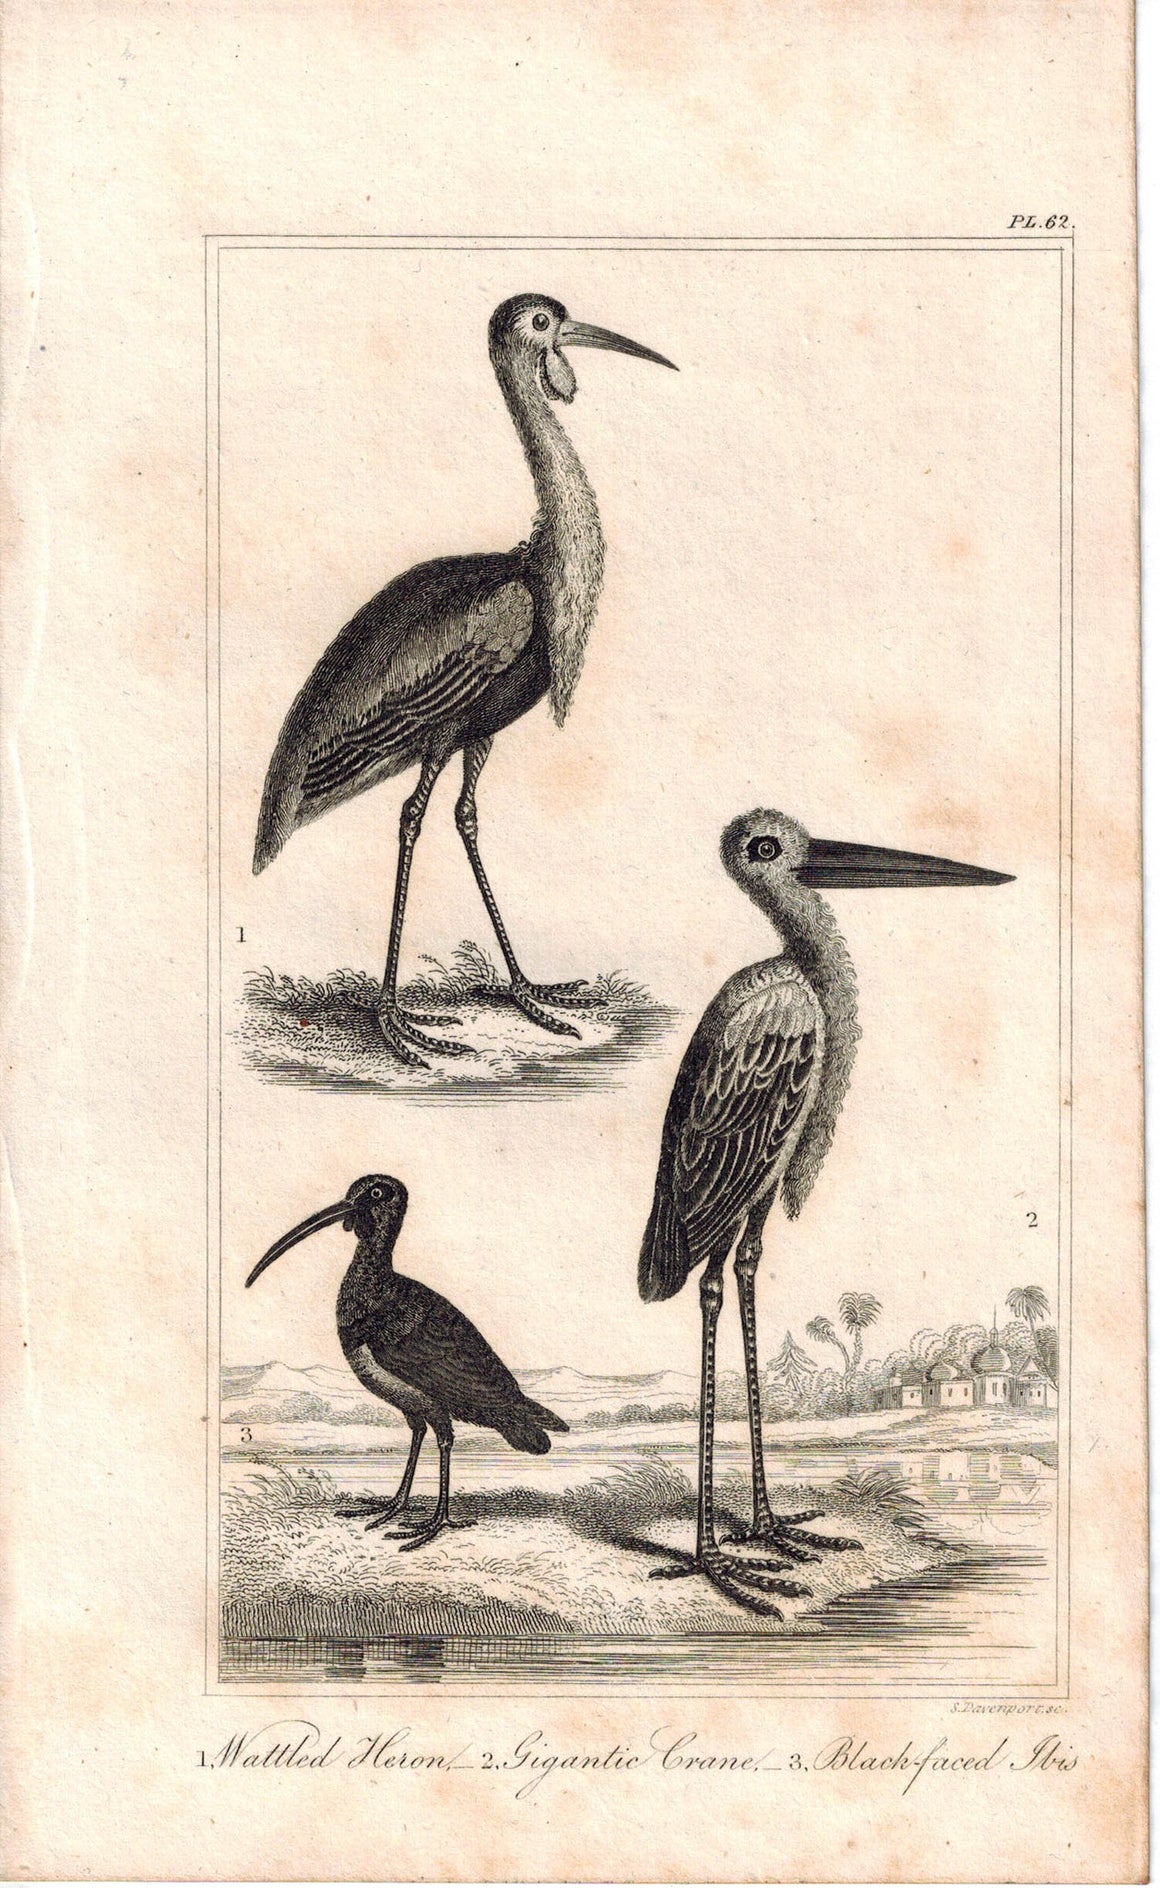 Wattled Heron, Gigantic Crane, Black-faced Ibis 1821 Antique Bird Engraved Print